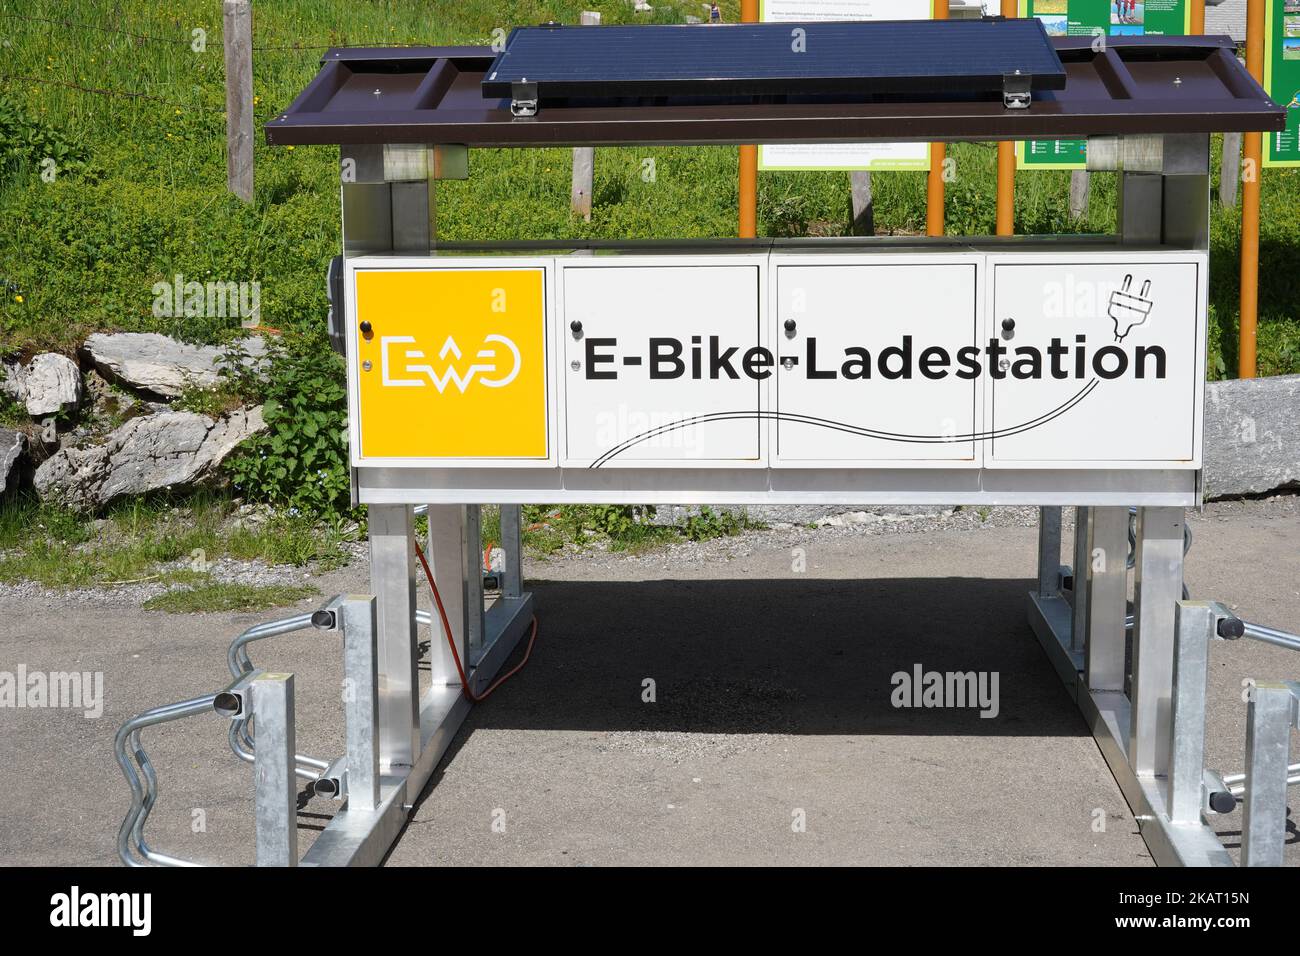 E-Bike-Ladestationen, in deutscher E-Bike-ladestation, auf dem Gipfel des Berges in der Nähe der Offroad-Fahrradlinie. Stockfoto